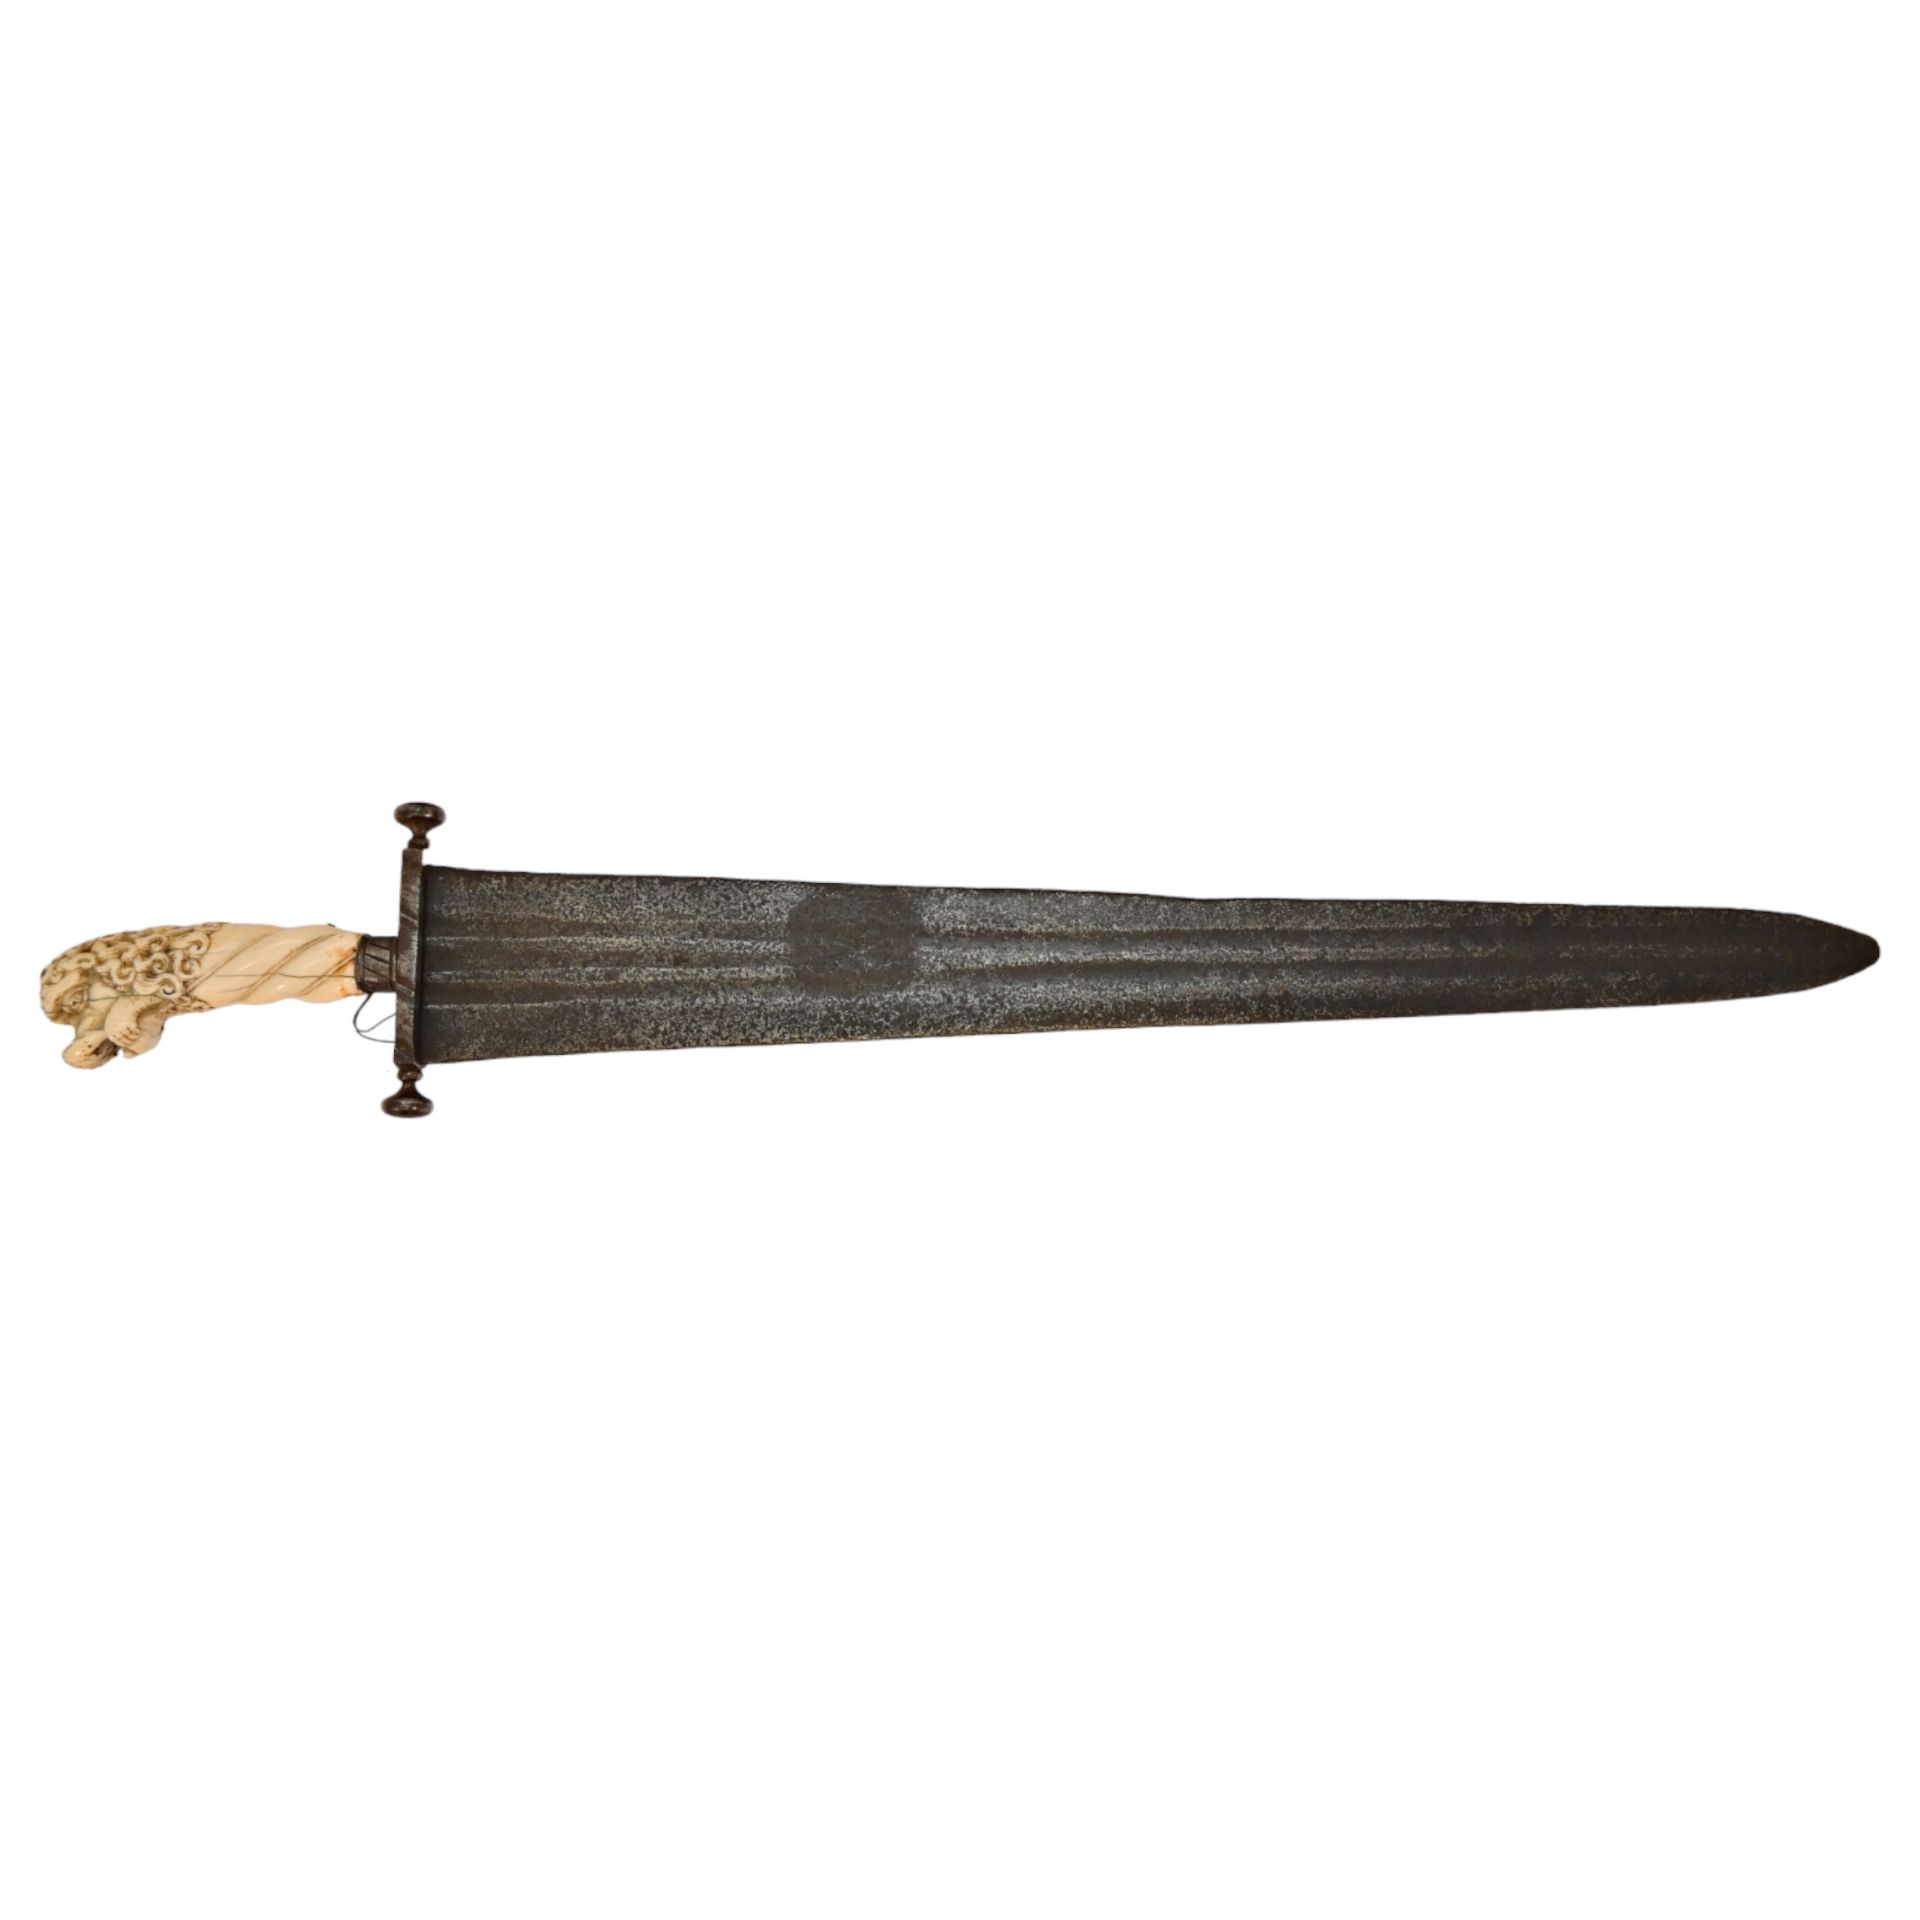 Rare Cinquedea type Sword, 16-17th Century, Italy. - Image 3 of 14